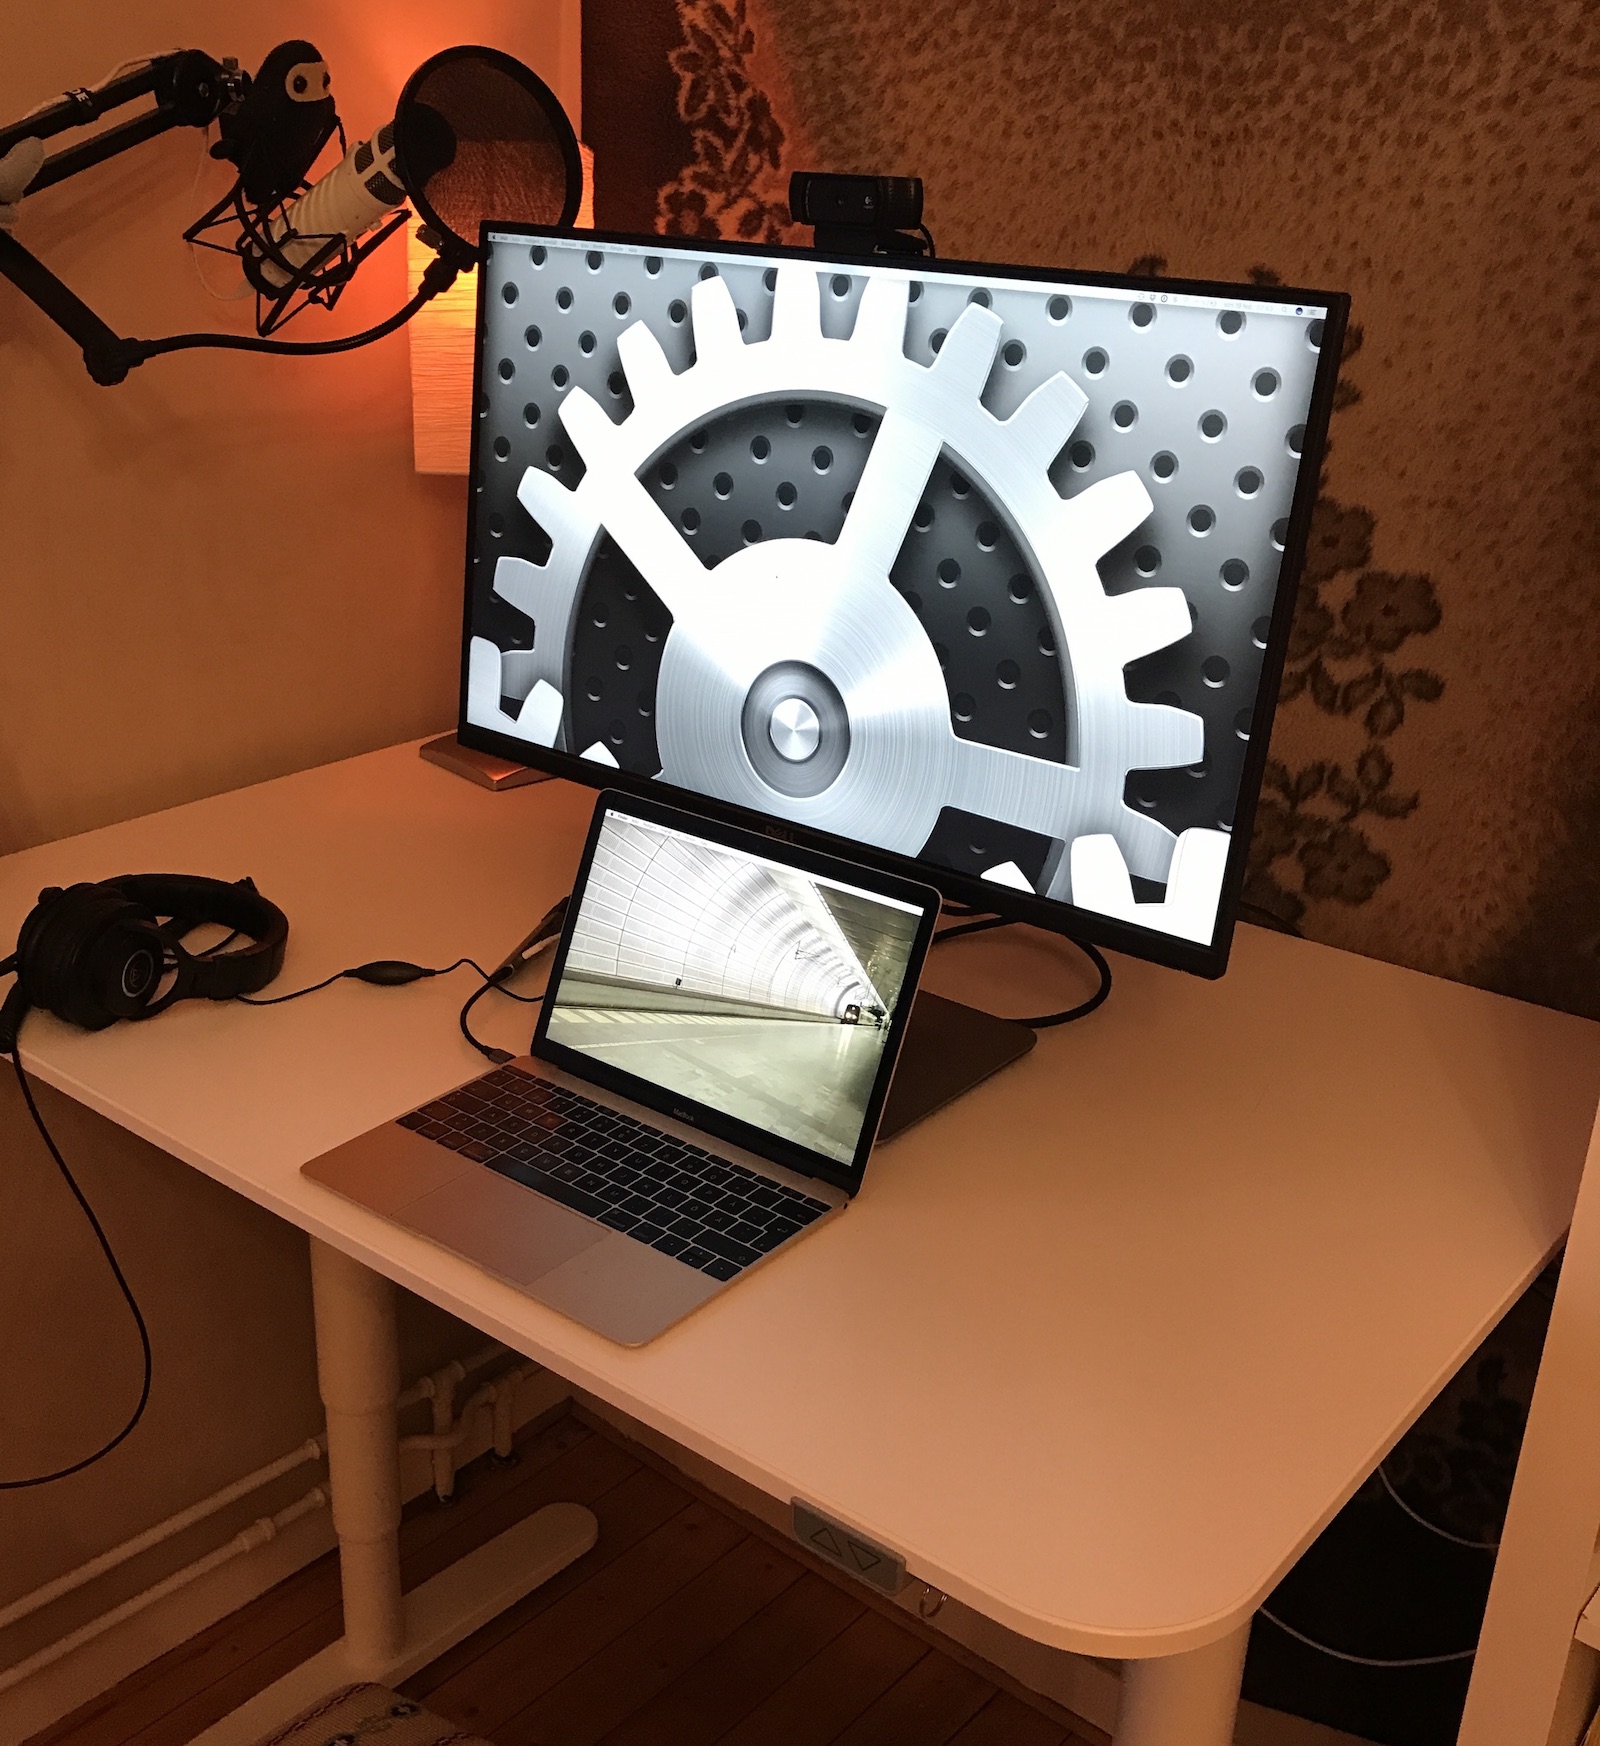 Current desk setup